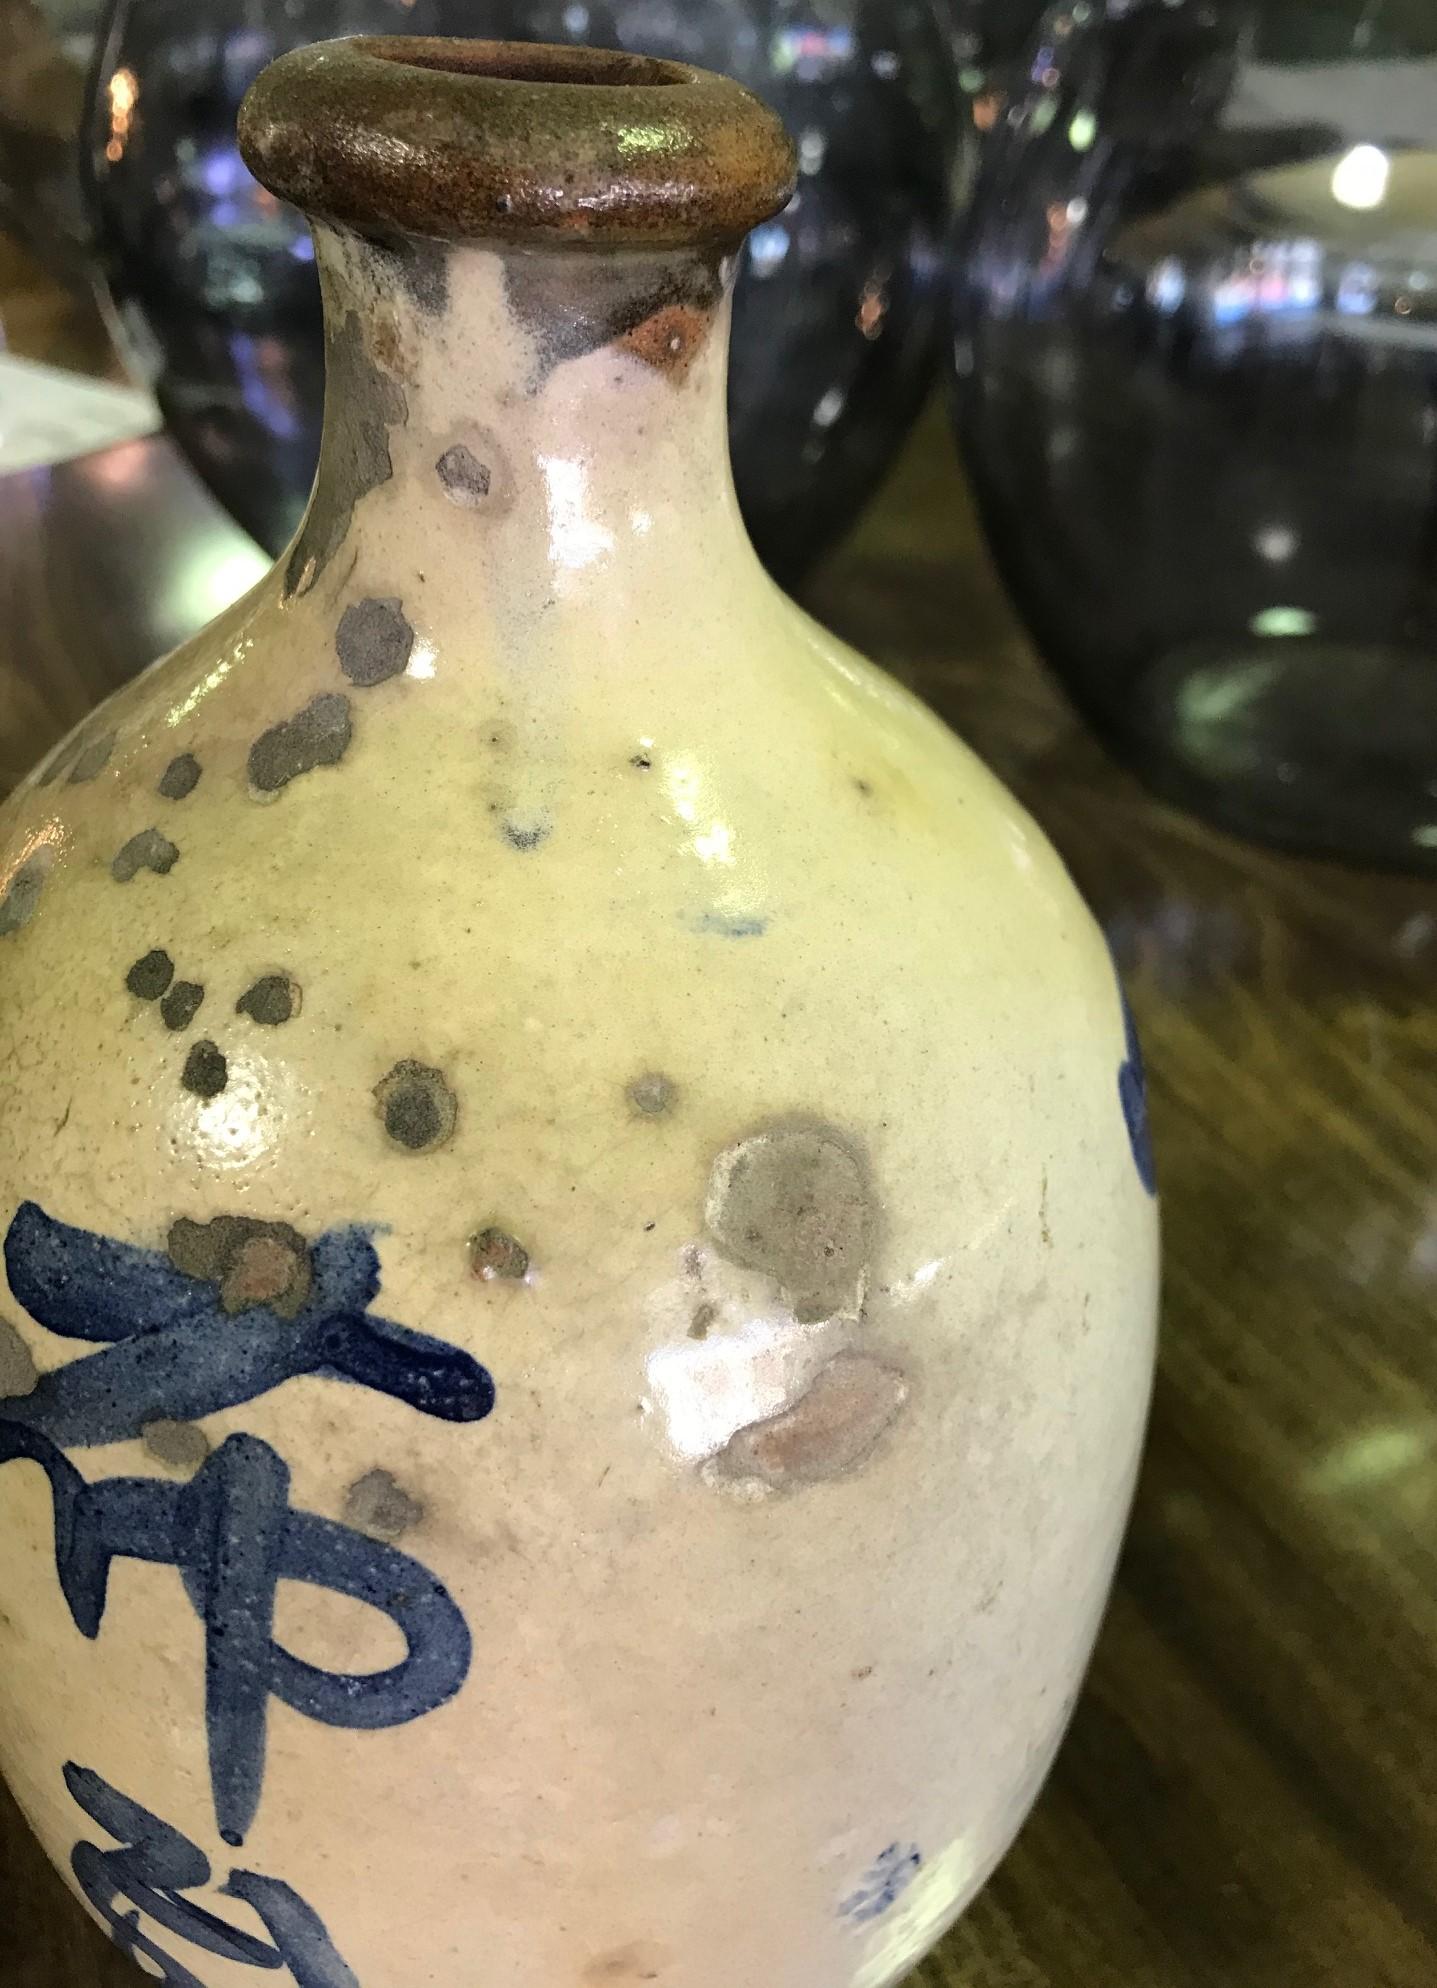 vintage sake bottle